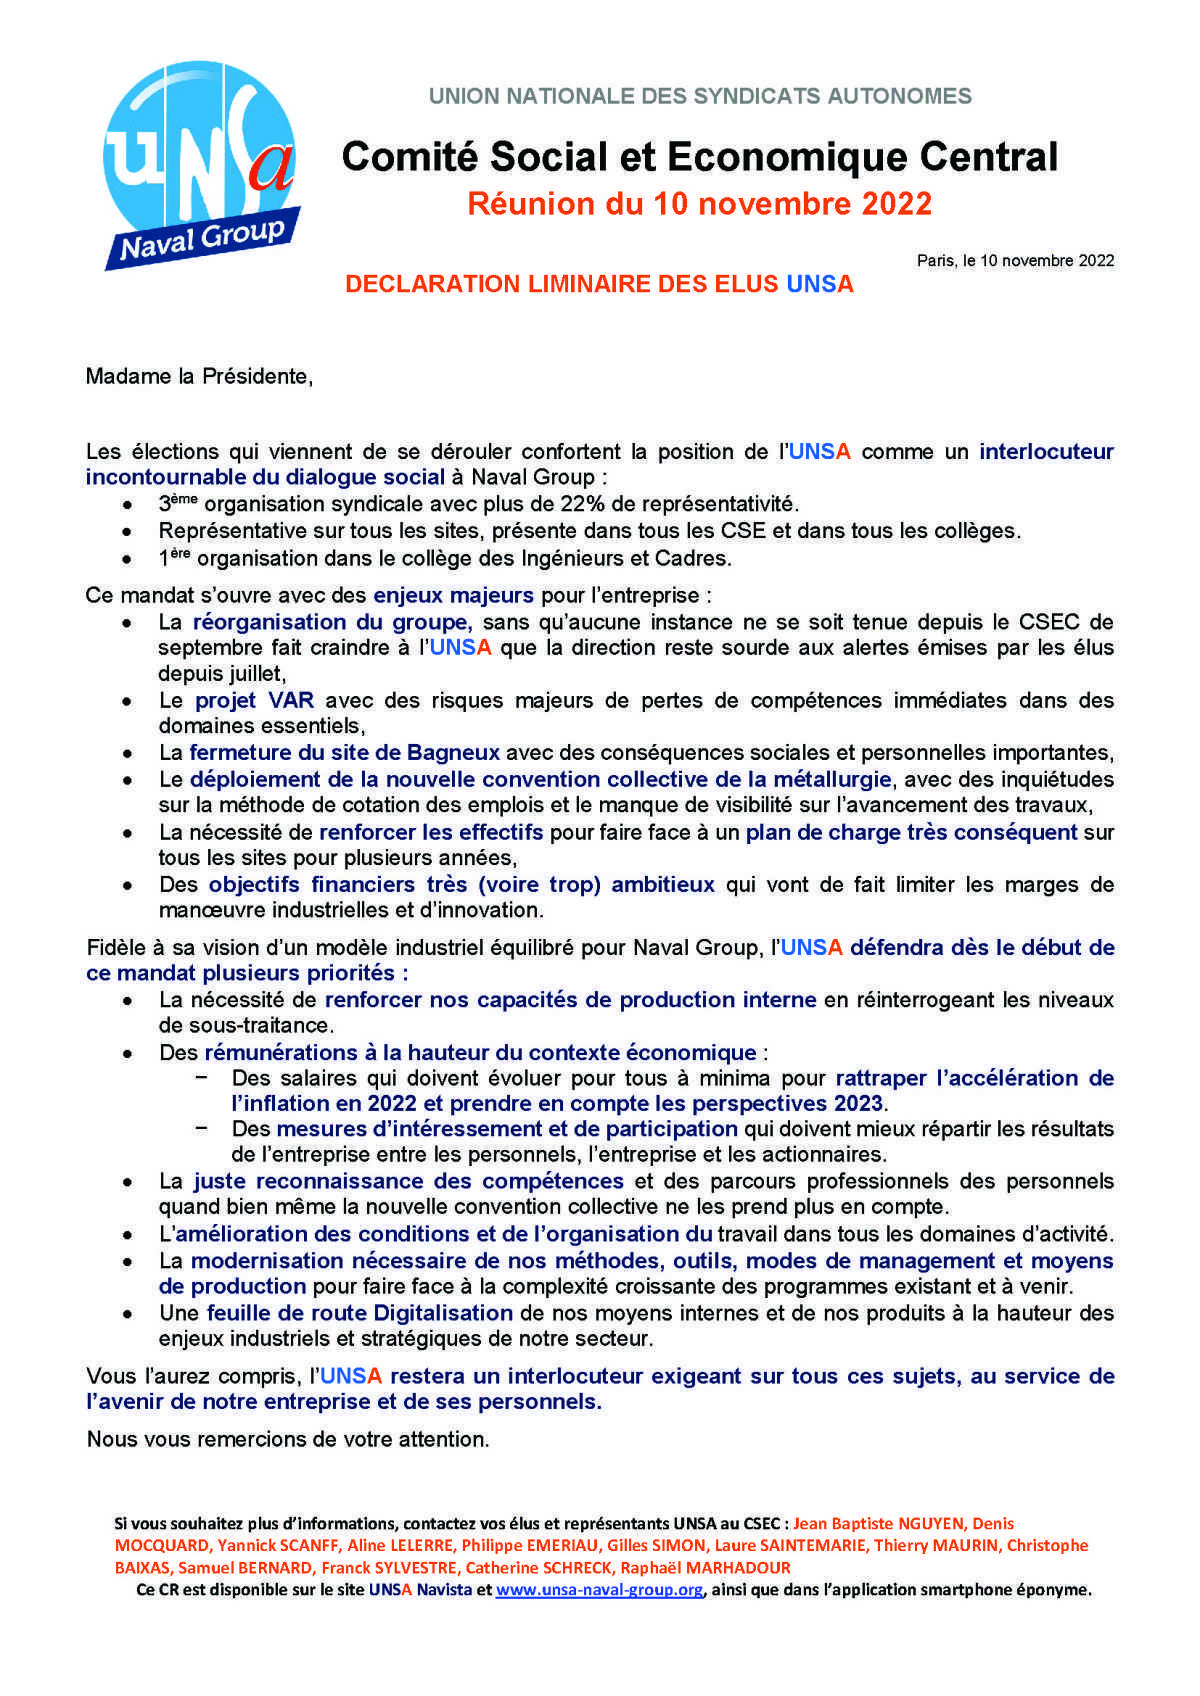 Réunion du 10 novembre 2022 - Déclaration liminaire UNSA